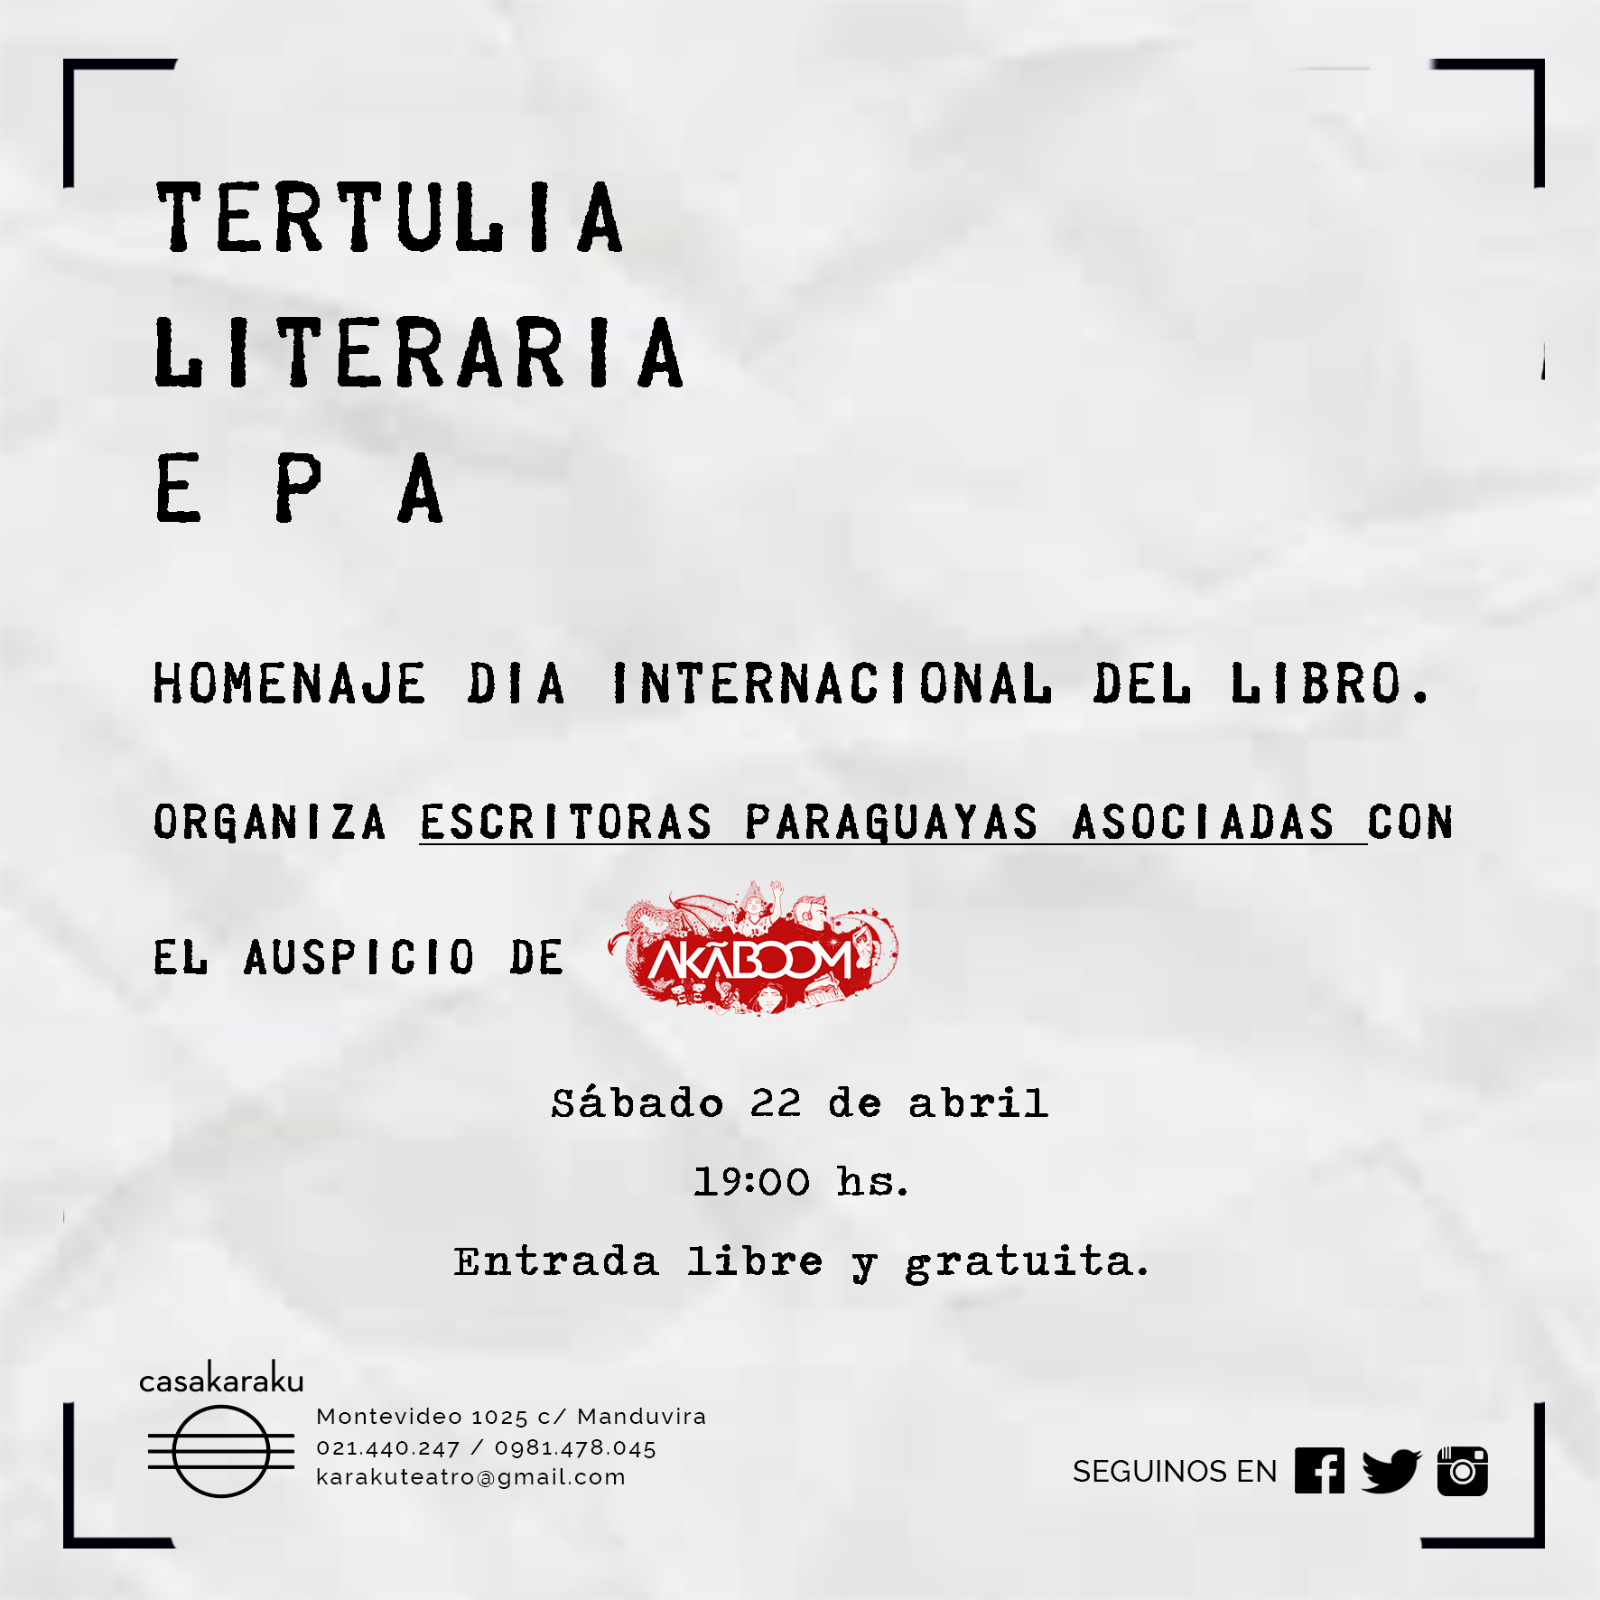 Escritoras organizan tertulia literaria en homenaje al día internacional del libro imagen